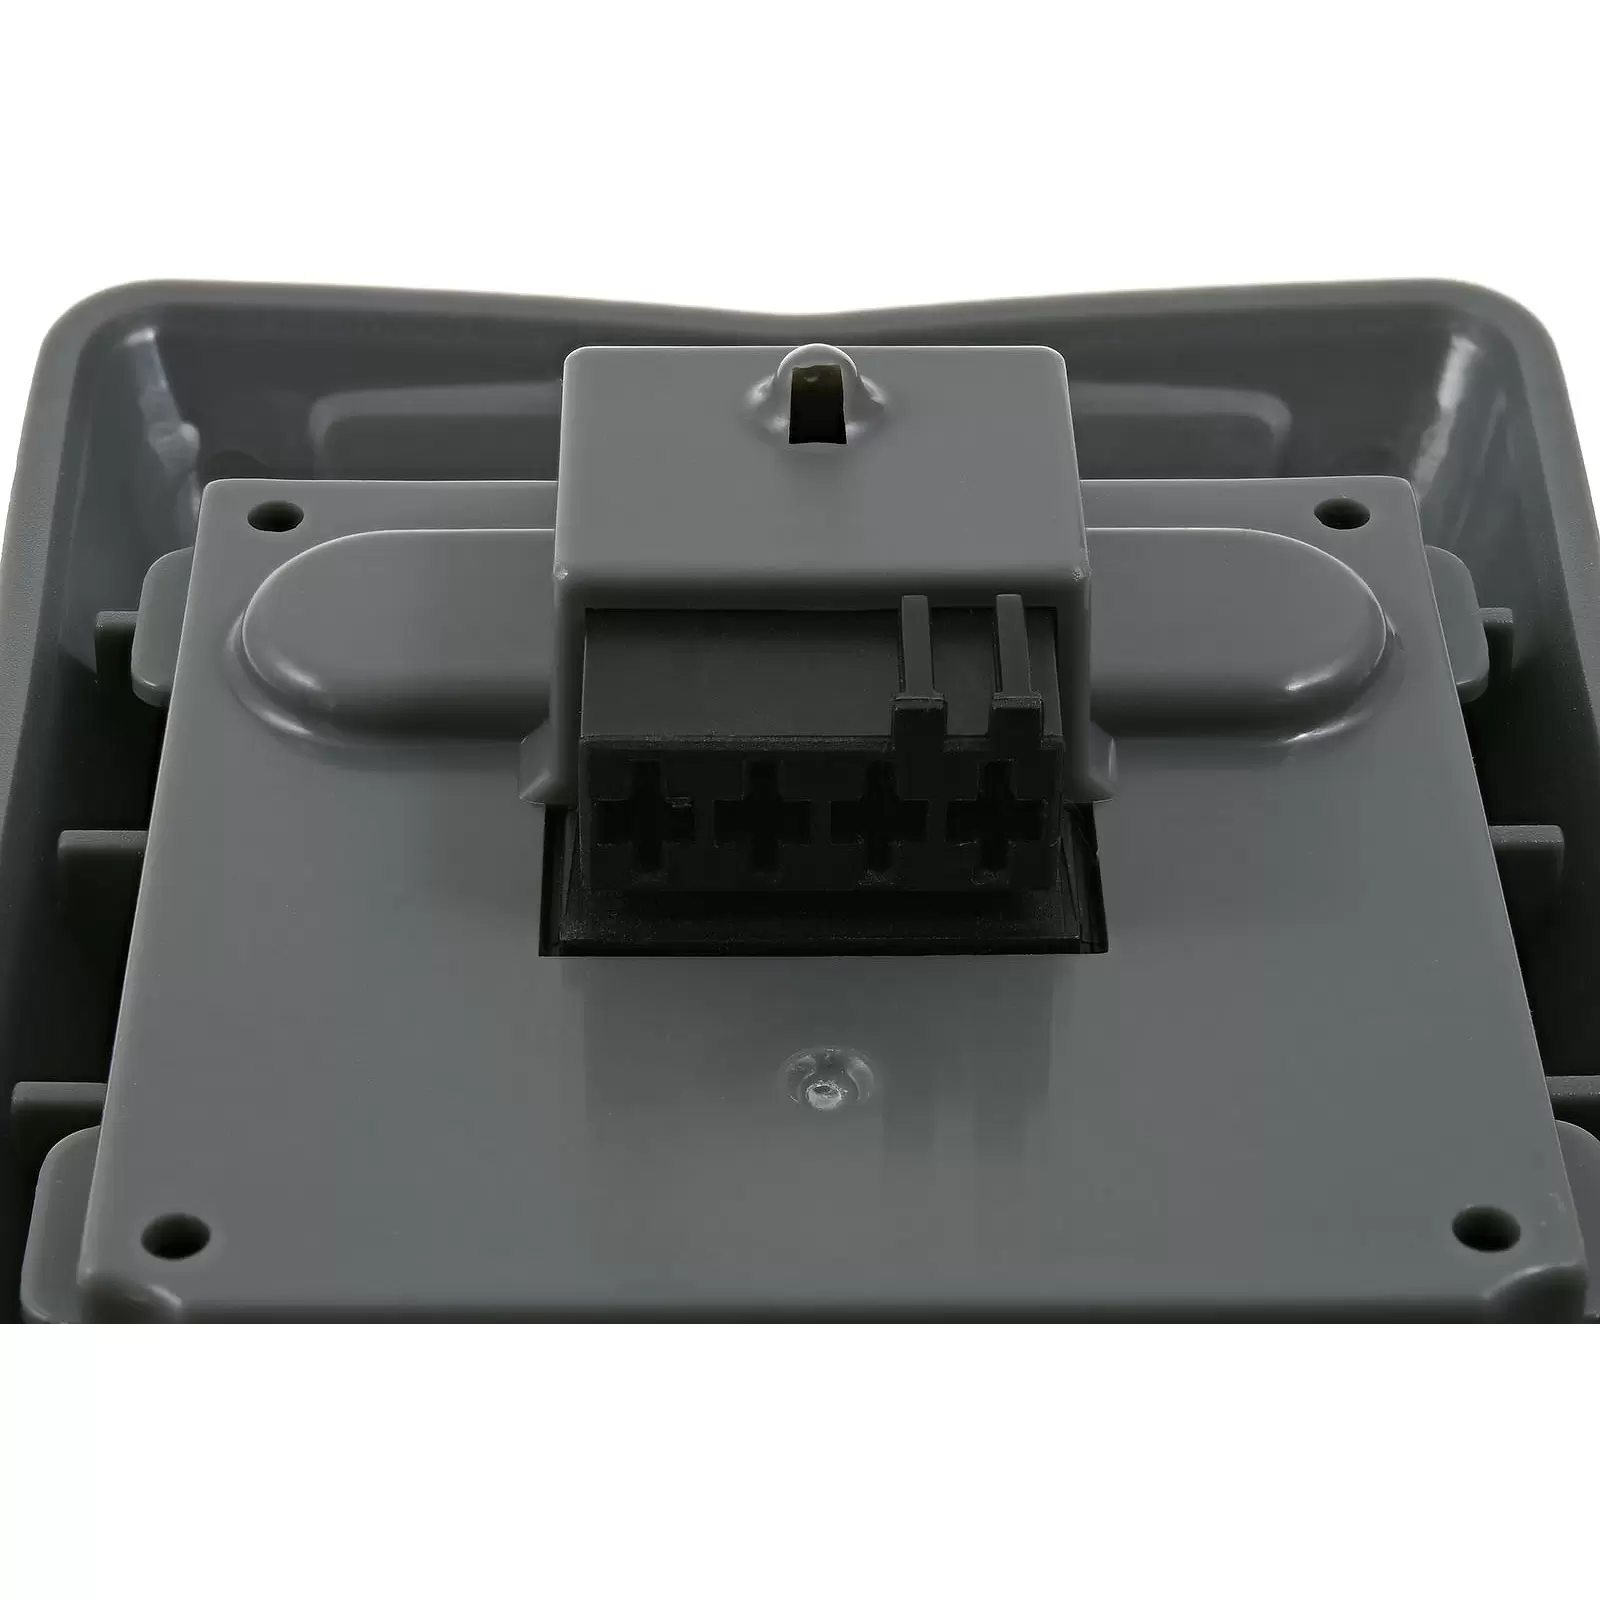 Powerakku für Wand-Schlauchbox Gardena 35 / 8025-20 mit Roll-Up Automatik / Typ 008A231